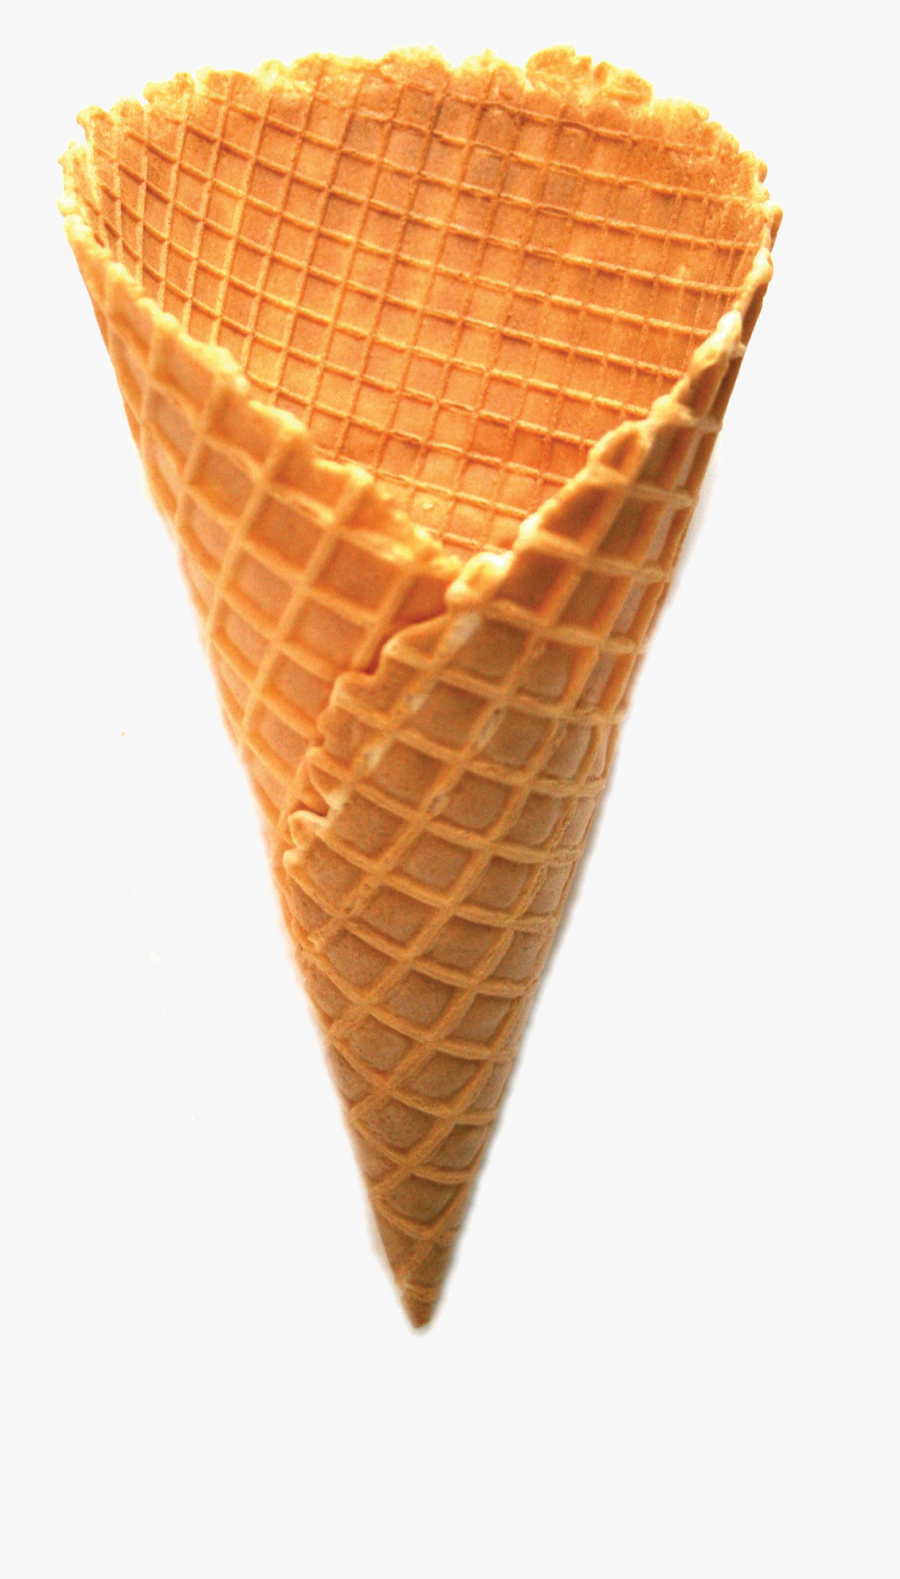 Ice Cream Cones Waffle Sundae - Ice Cream Cone Png, Transparent Clipart